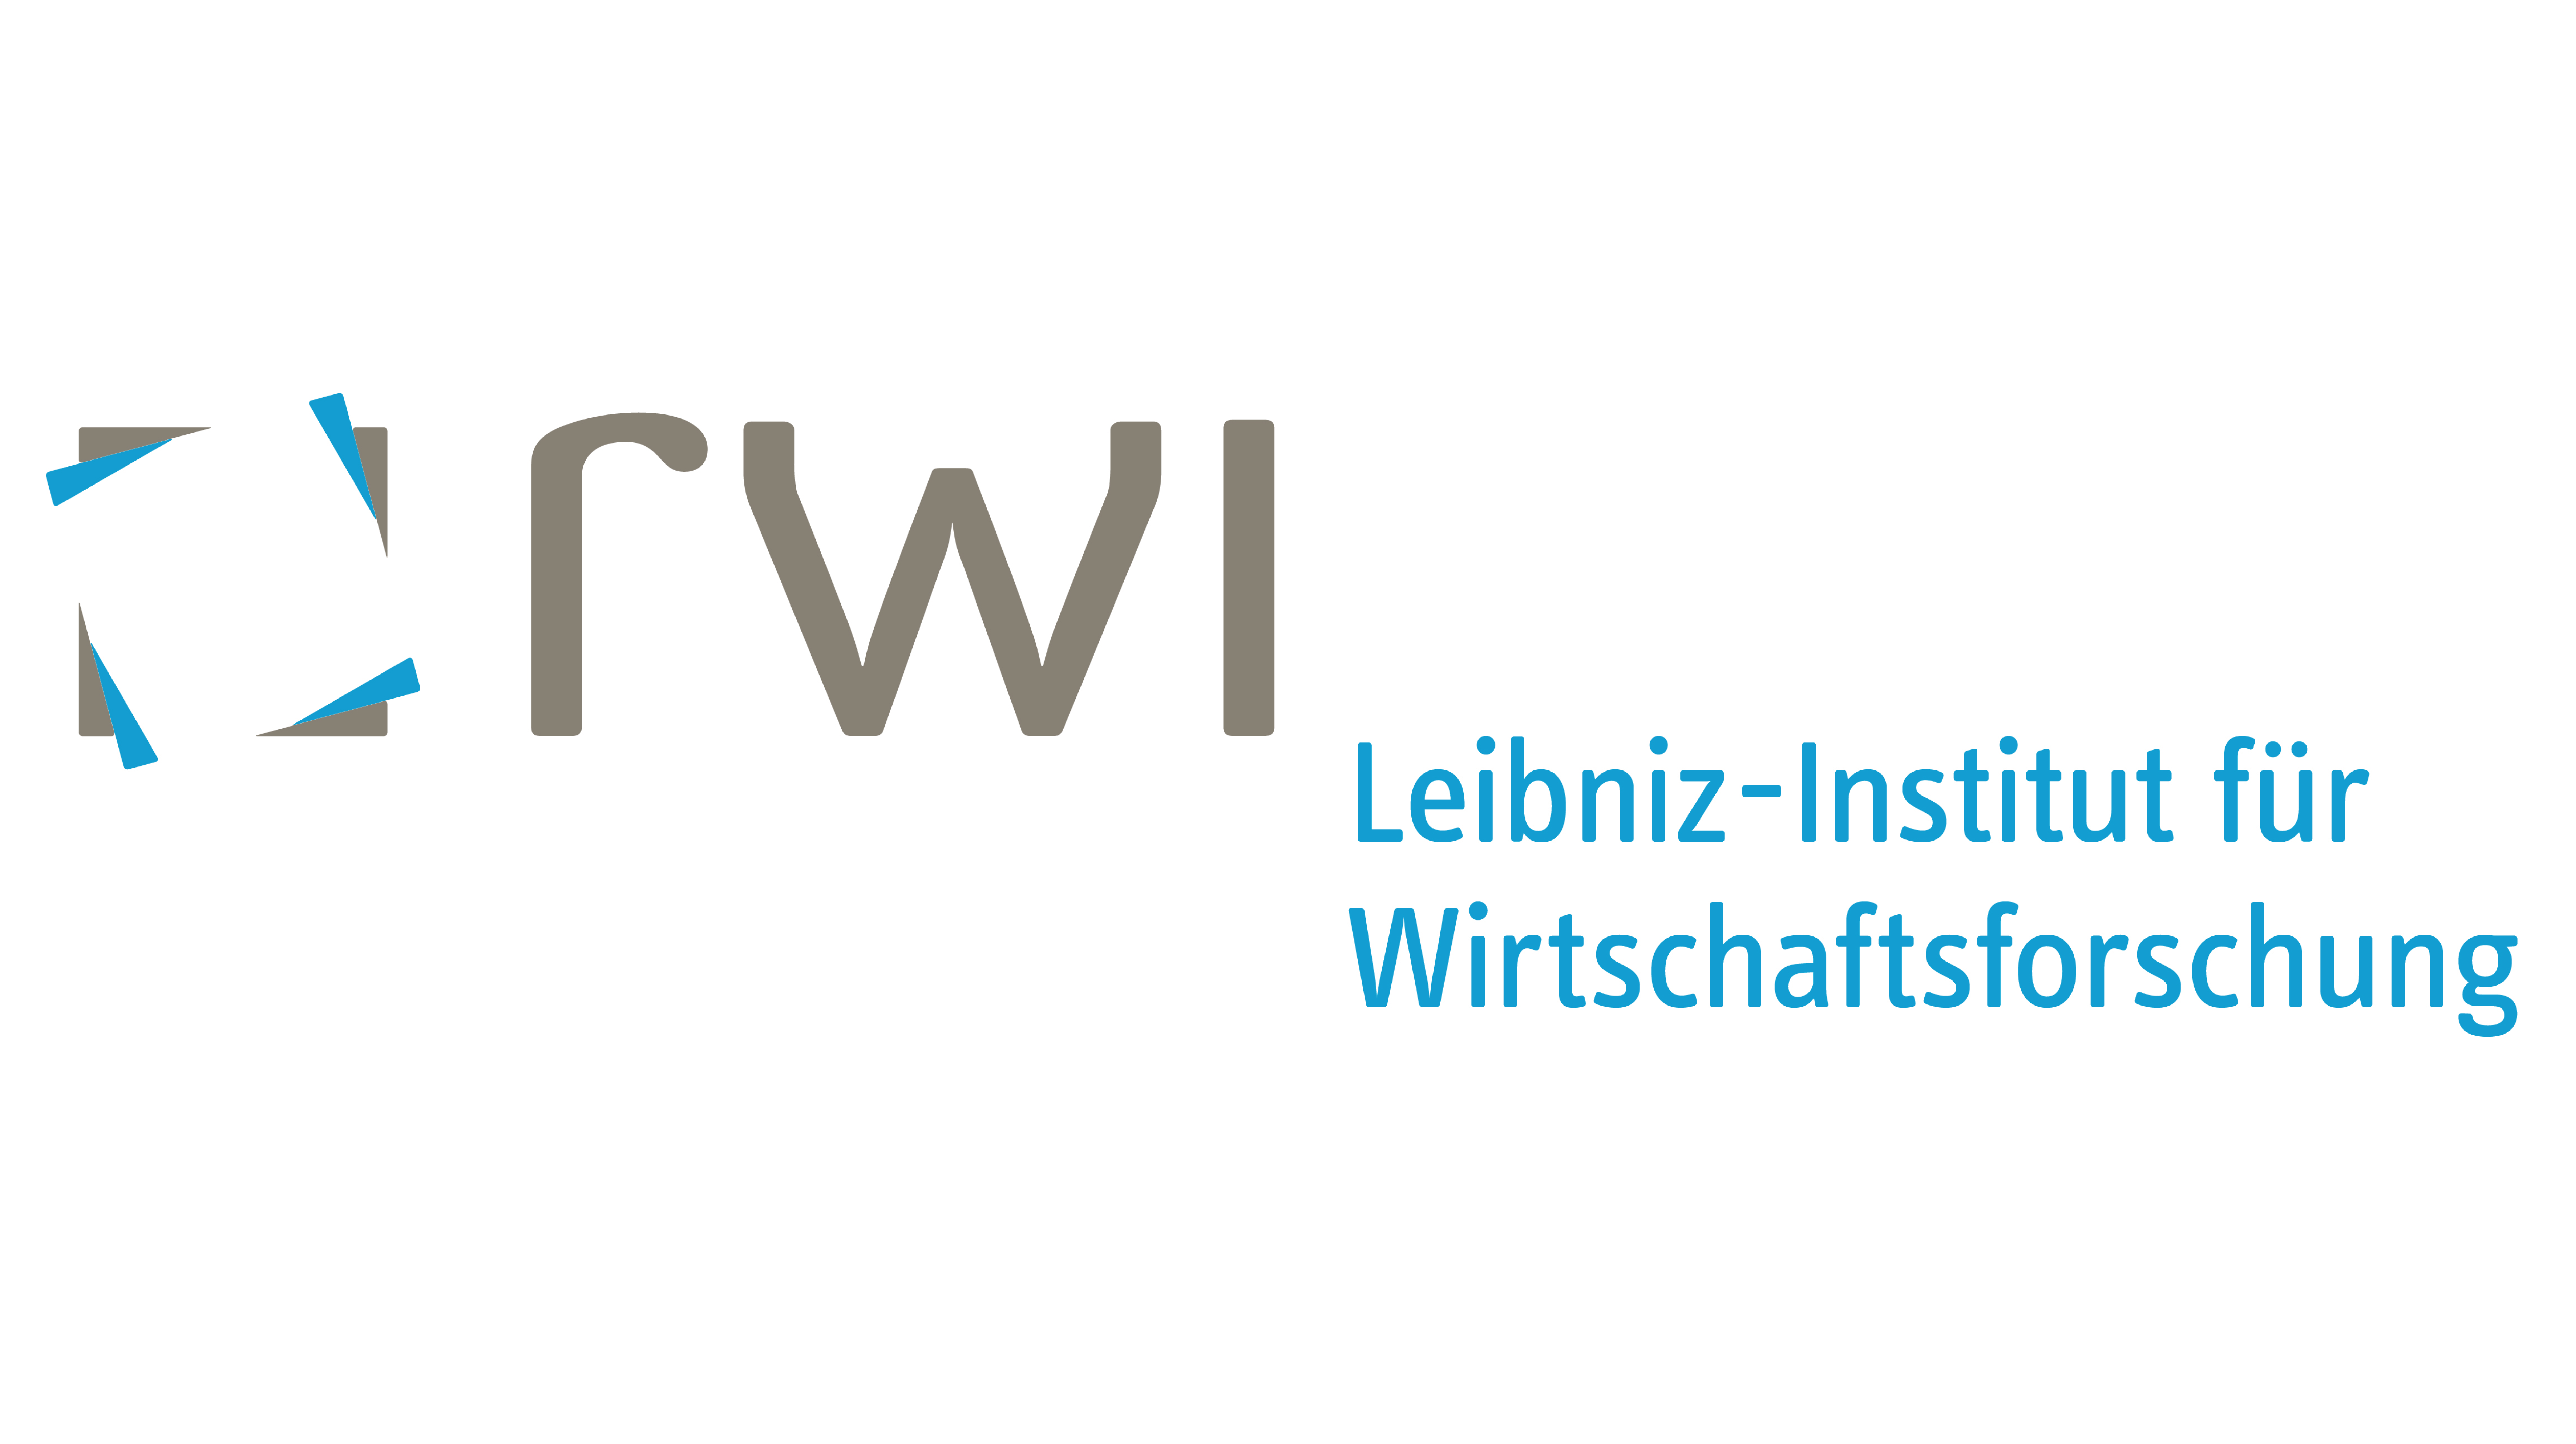 RWI – Leibniz-Institut für Wirtschaftsforschung